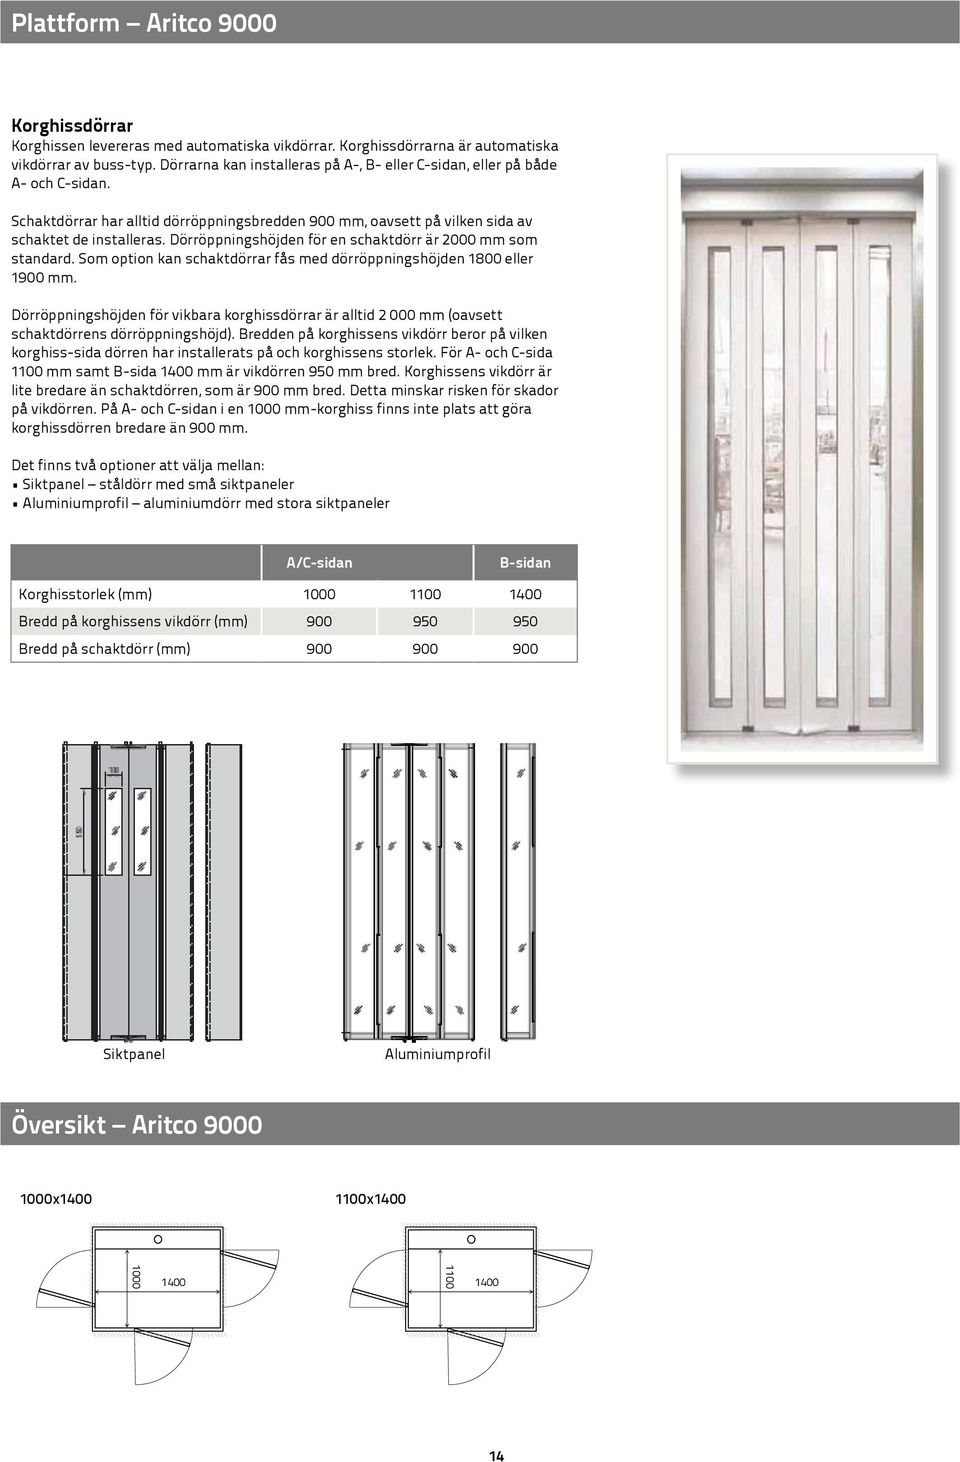 Dörröppningshöjden för en schaktdörr är 2000 mm som standard. Som option kan schaktdörrar fås med dörröppningshöjden 1800 eller 1900 mm.